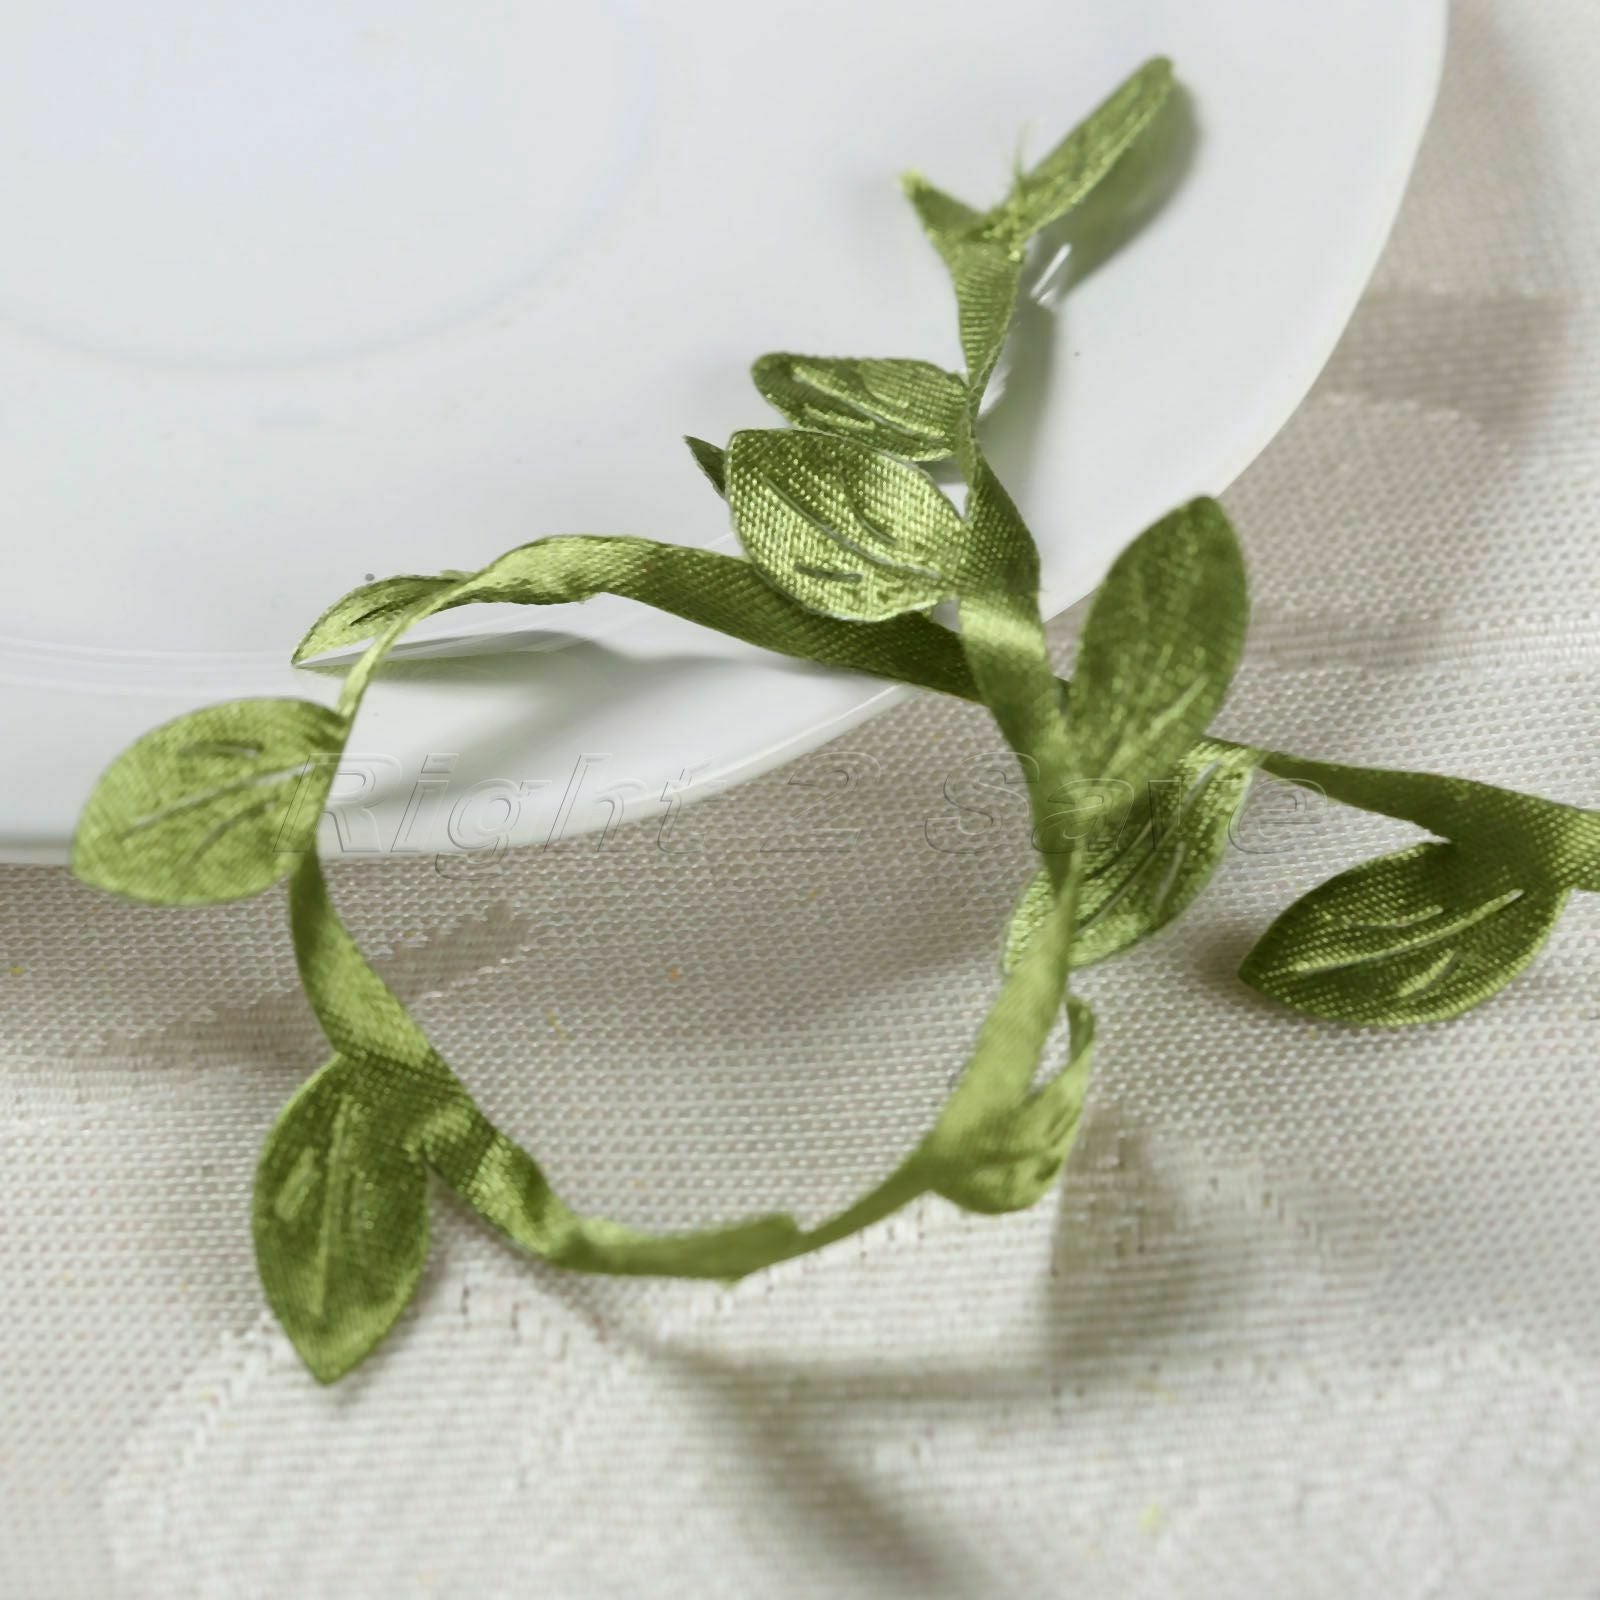 Green Artificial Wreath Leaves 5M DIY Flower Leaf Rattan Garland Accessory Decor